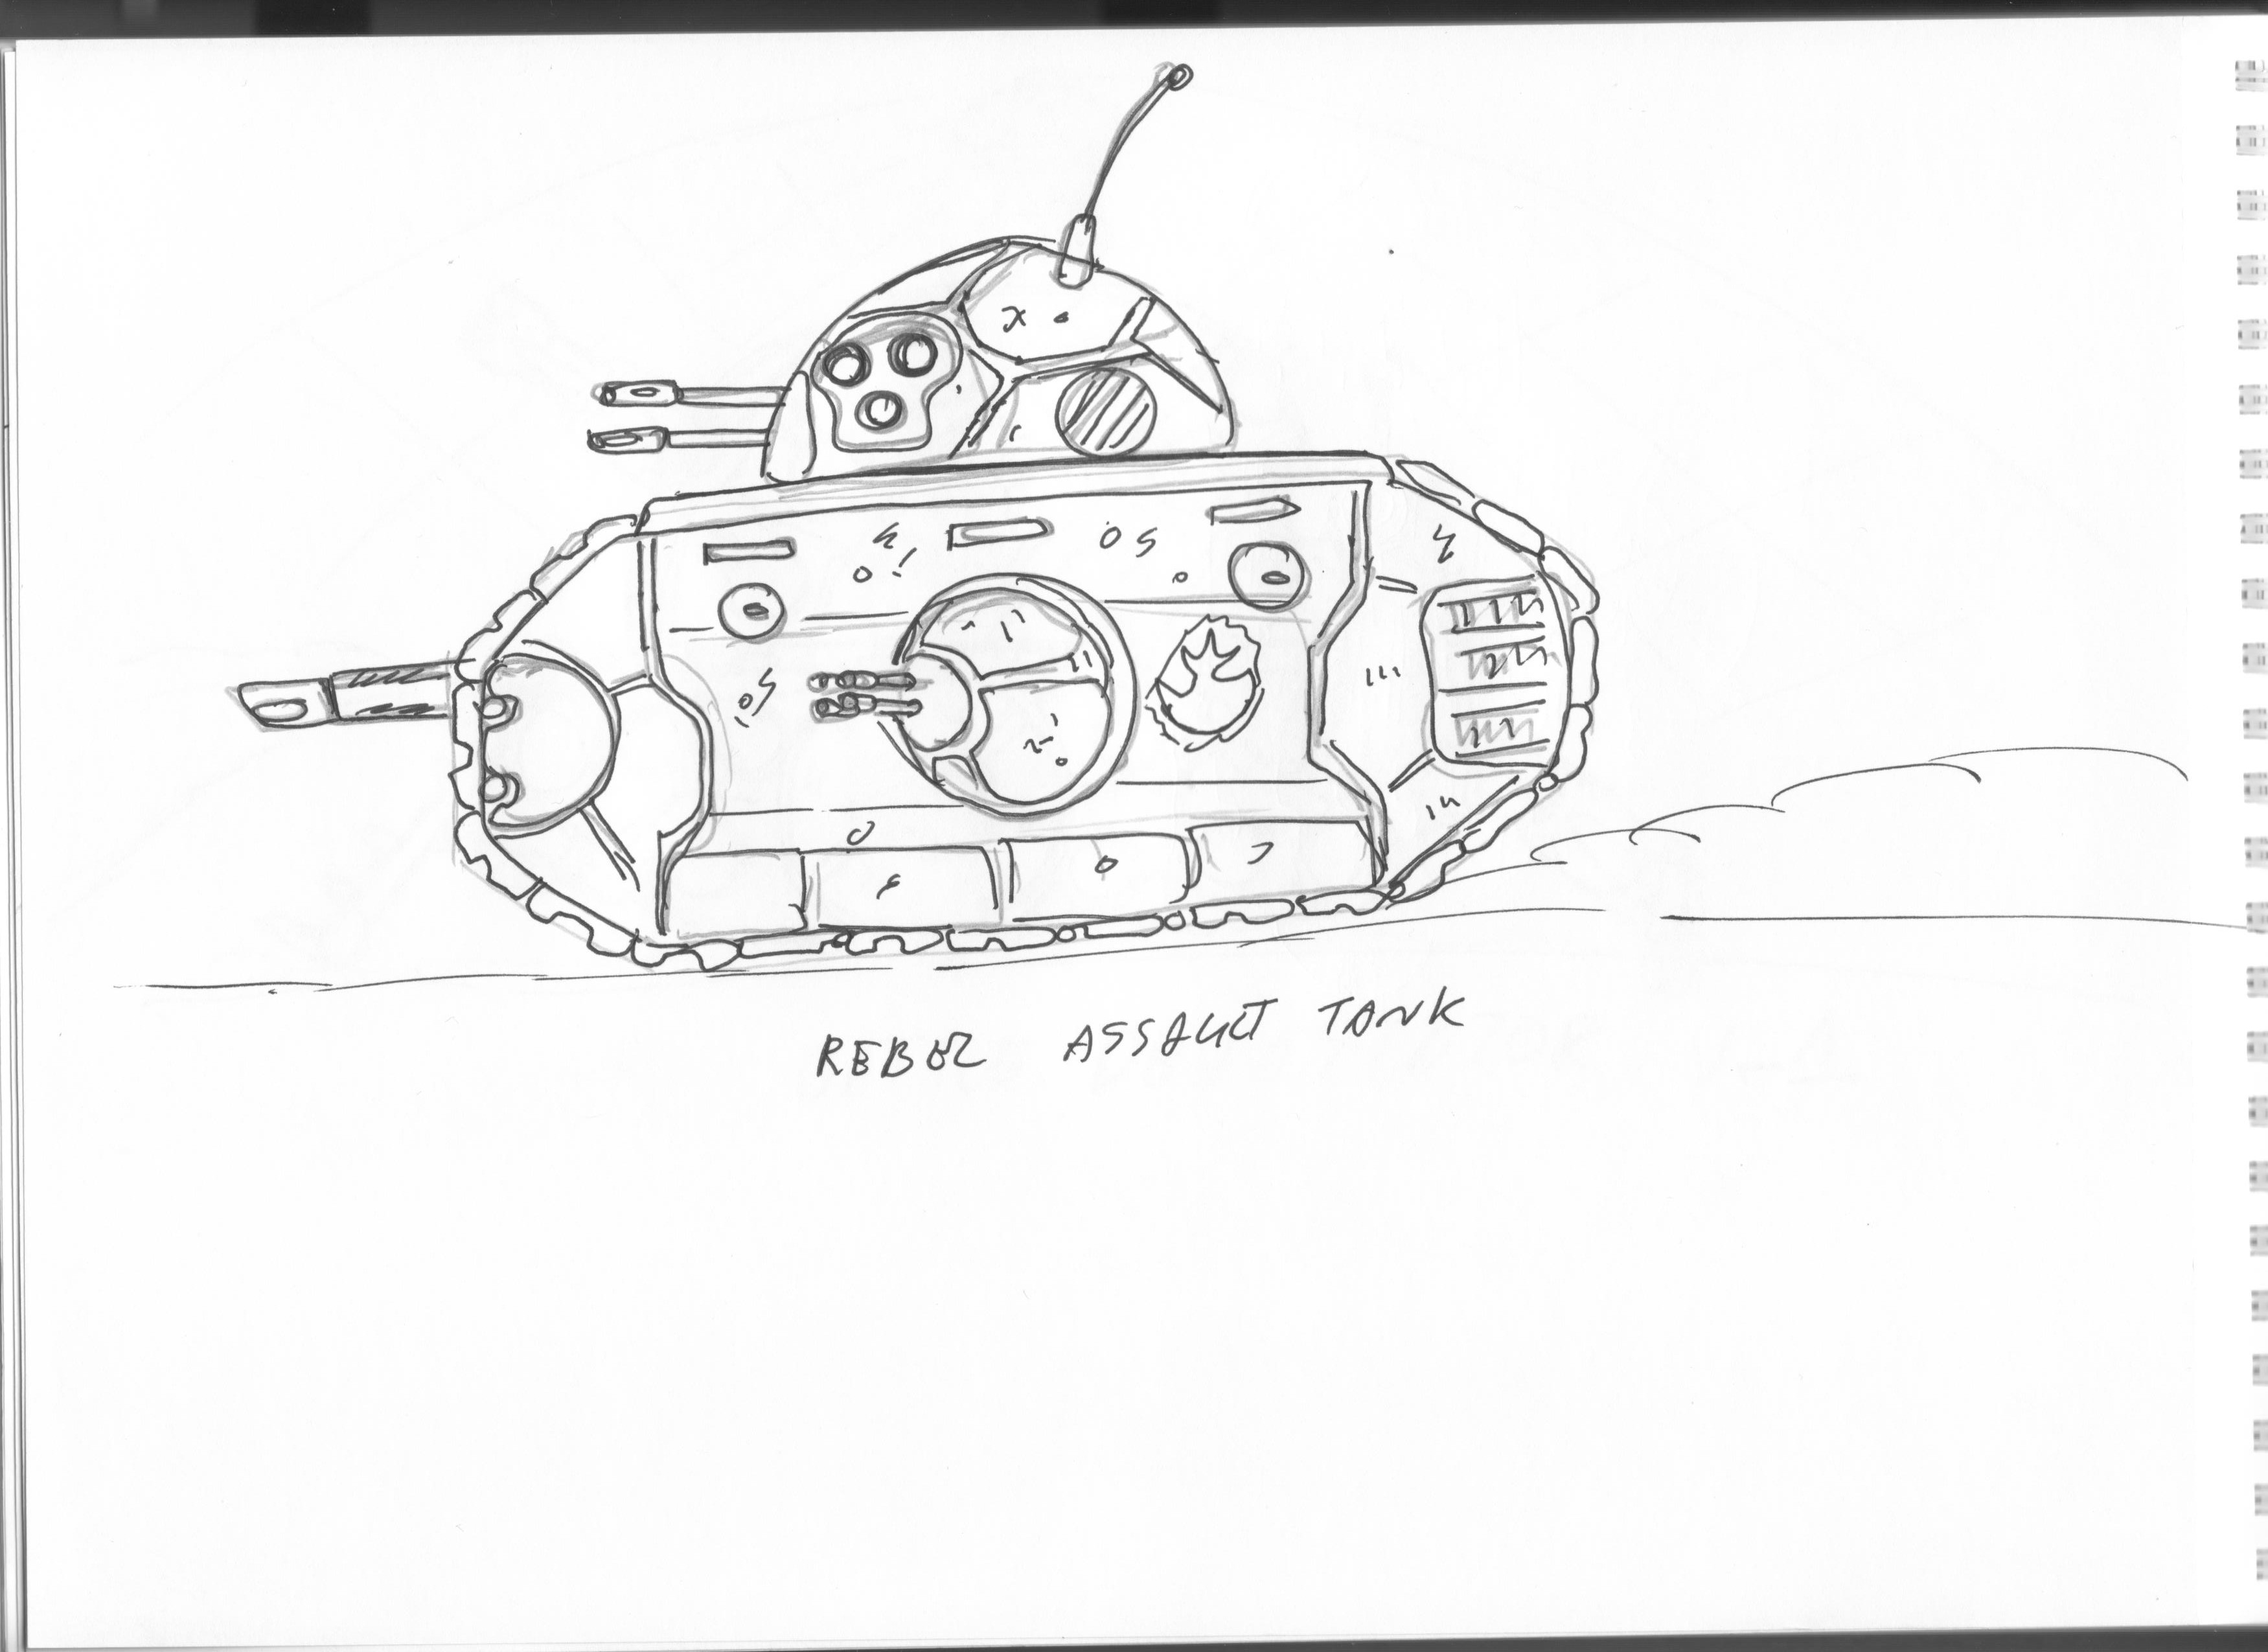 rebel battle tank star wars